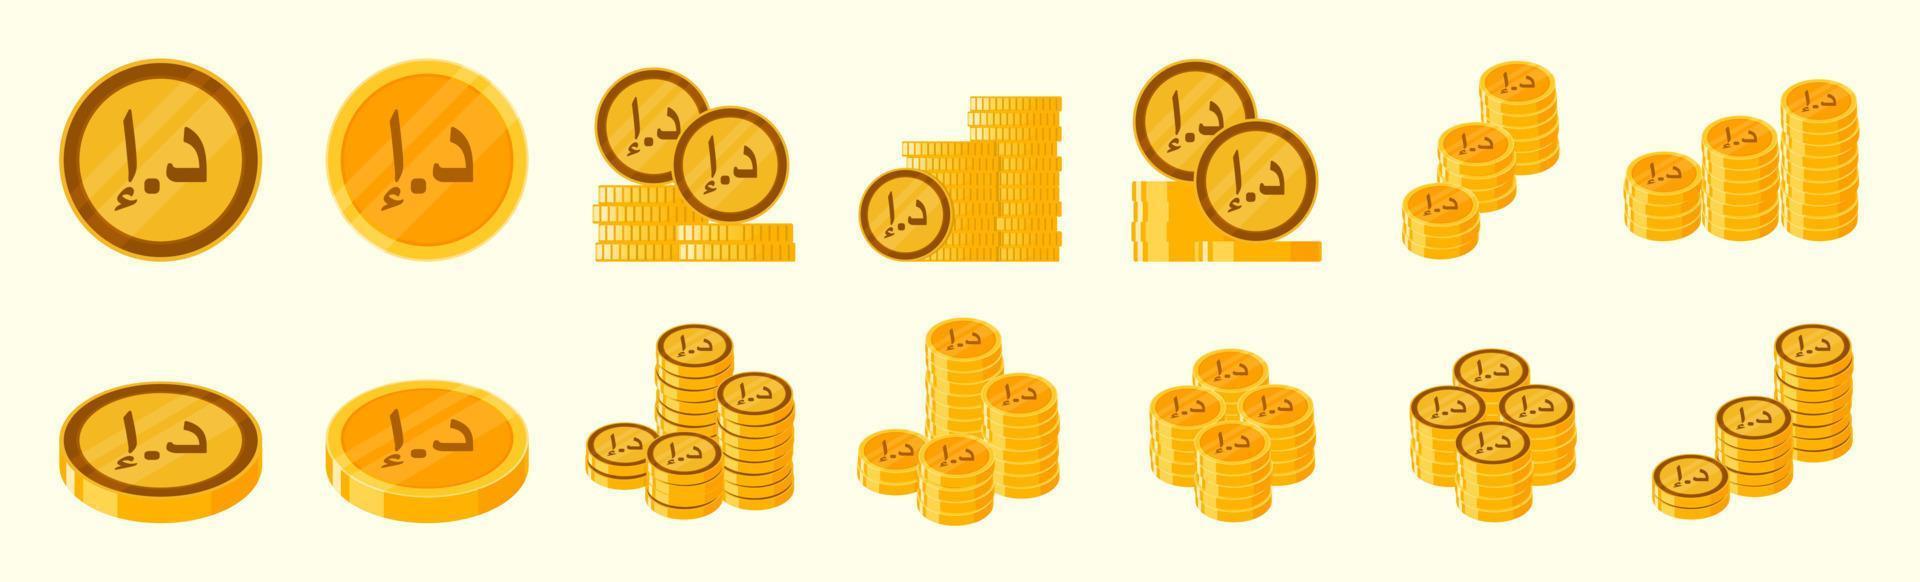 United Arab Emirates Dirham Coin Icon Set vector